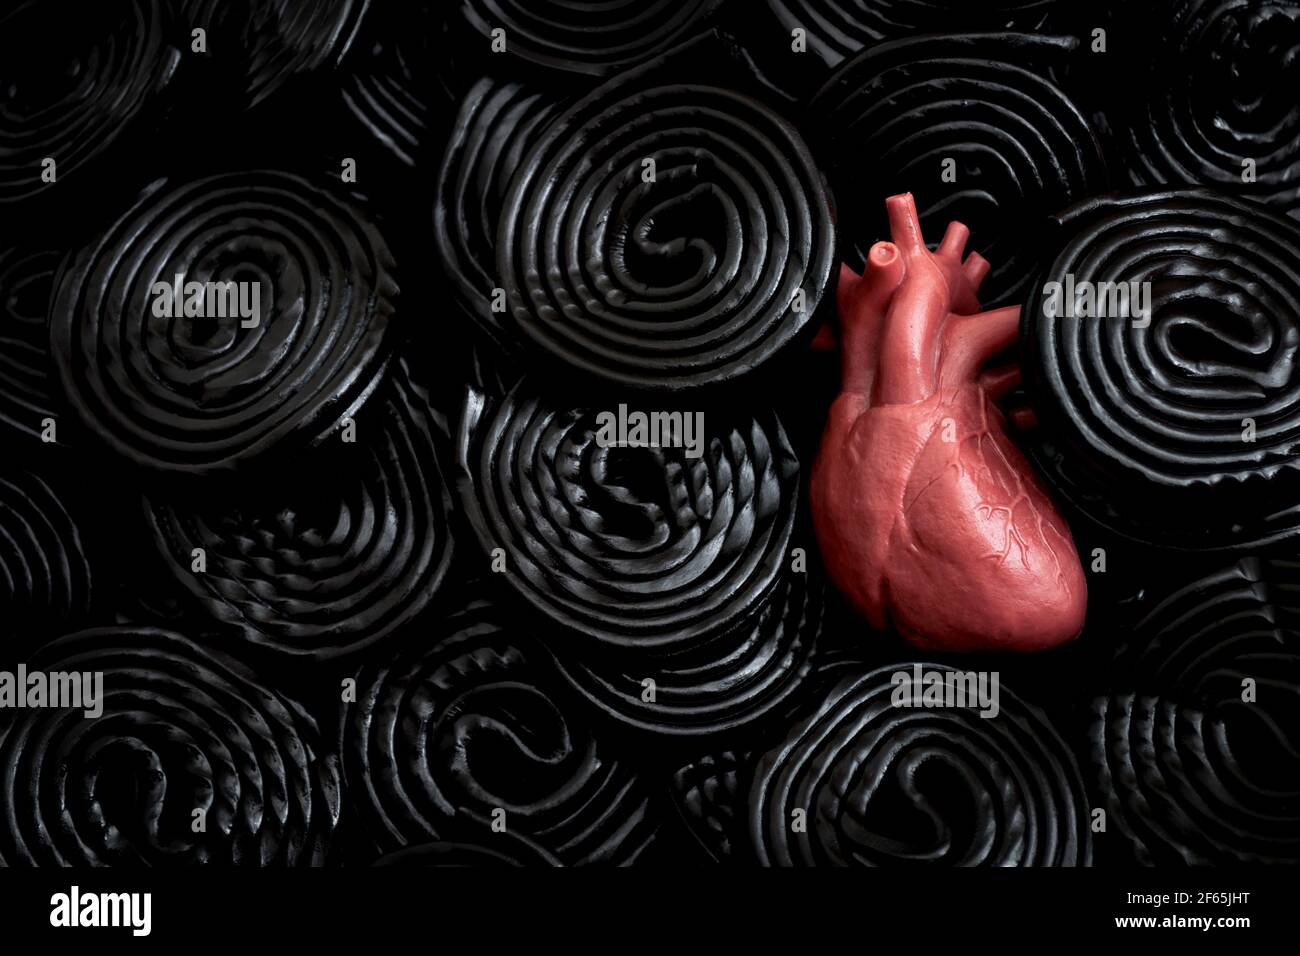 La réglisse noire est mauvaise pour votre concept de santé avec un coeur enfoui dans les roues de réglisse qui contiennent le composé édulcorant glycyrrhizine, qui peut déc Banque D'Images